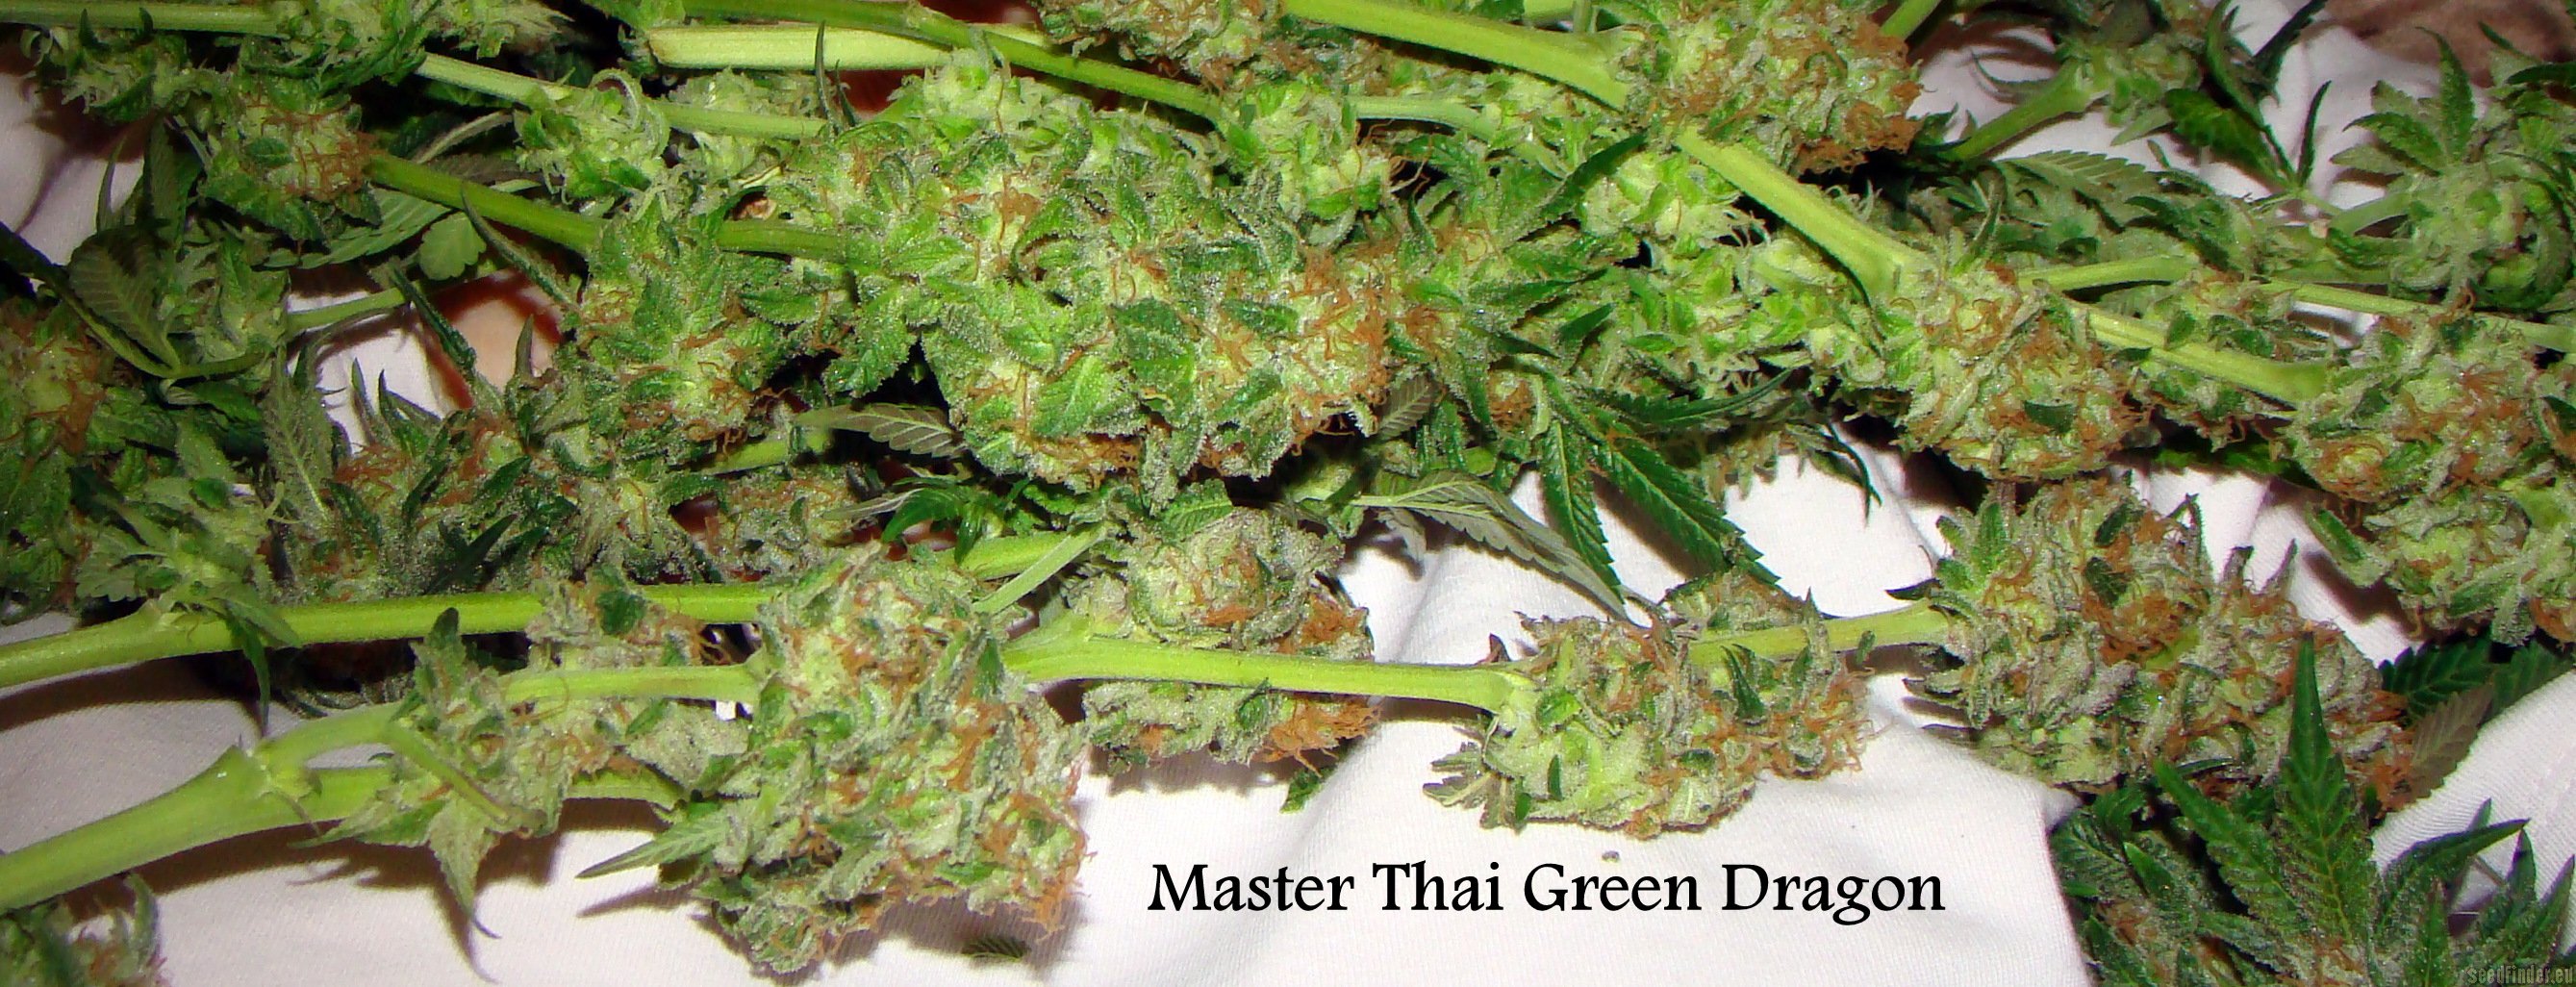 Master Thai Master Thai's Green Dragon